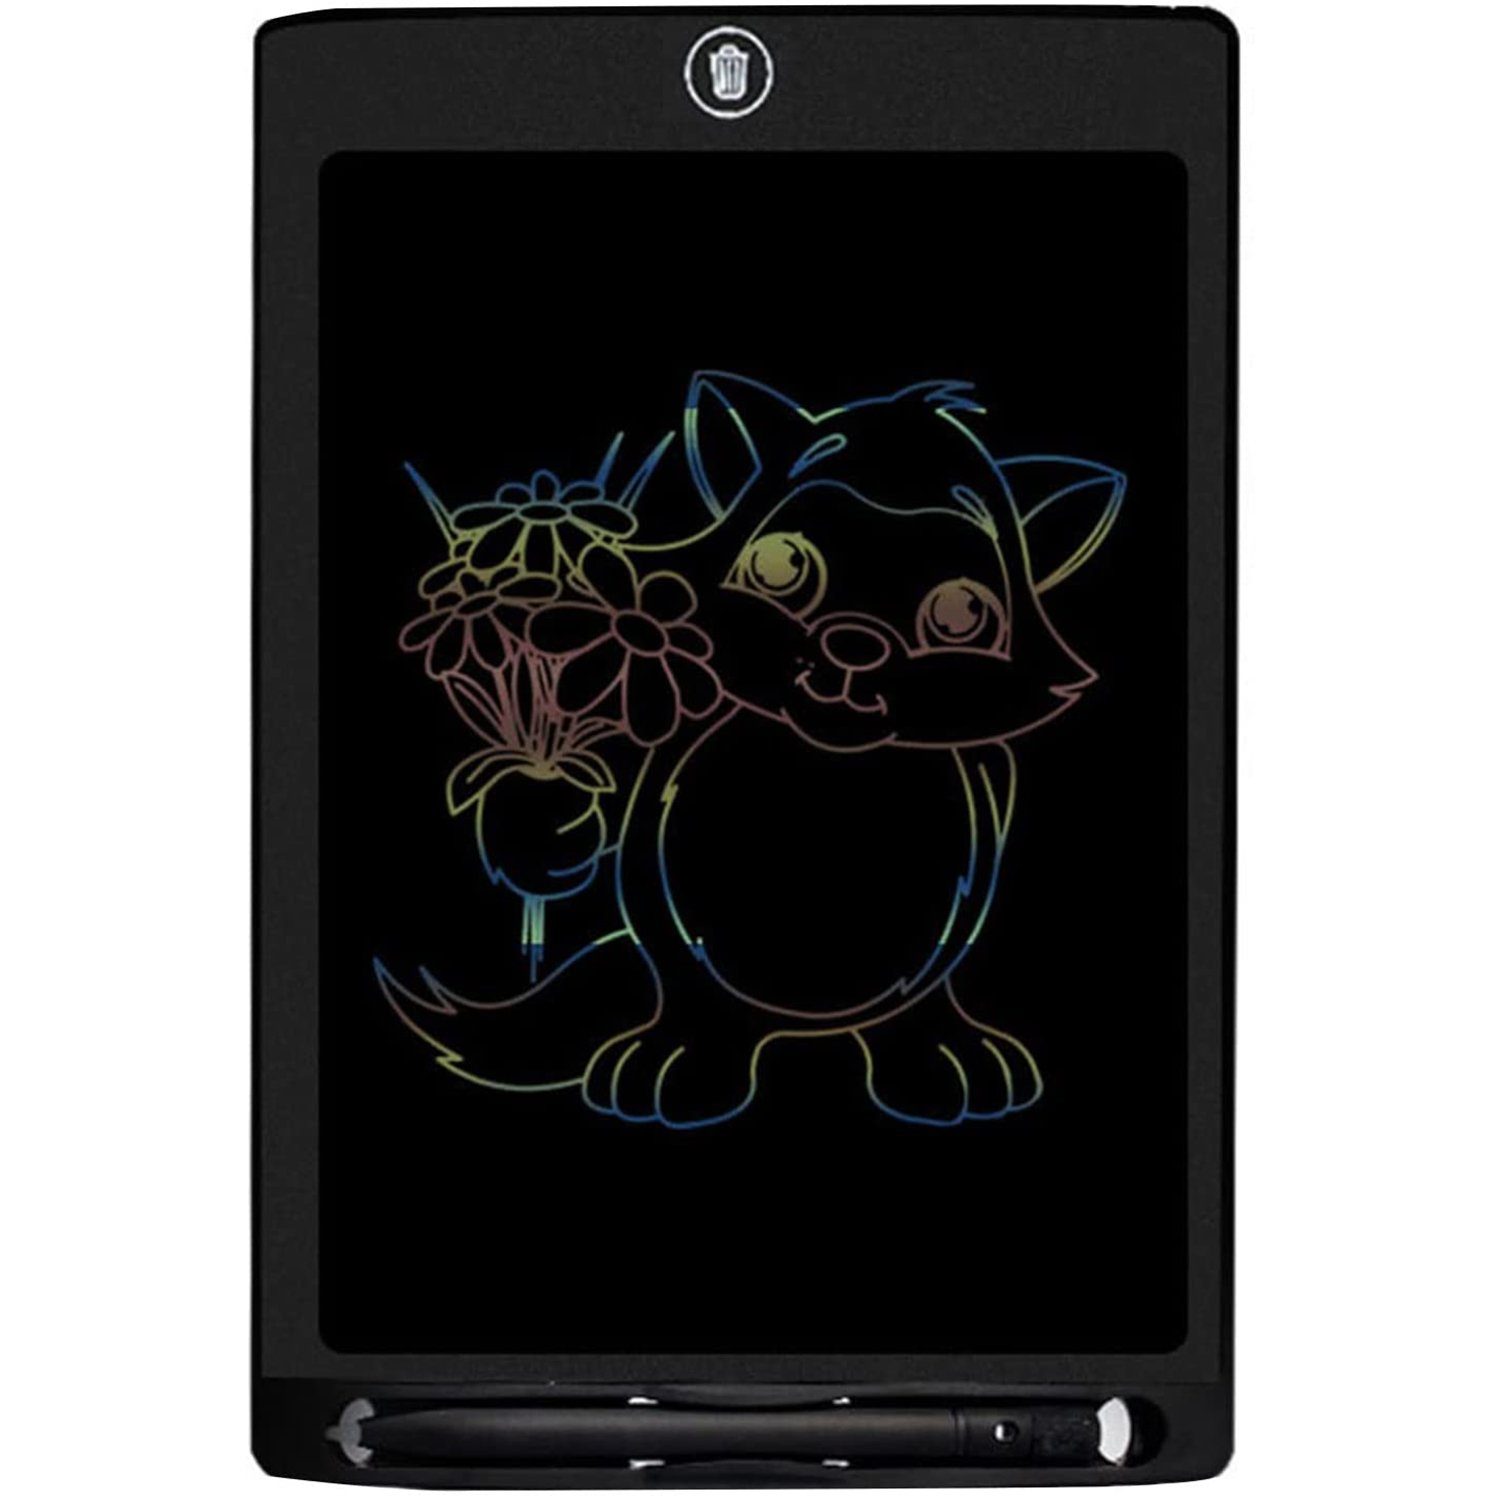 BeiLan 8.5 LCD Schreibtablett Elektronische Grafik Tablet Zeichenbrett Malerei Schreibtafel mit einem Knopf löschen für Kinder Kinder Nachricht oder Memoboard zu Hause Schule oder Büro 